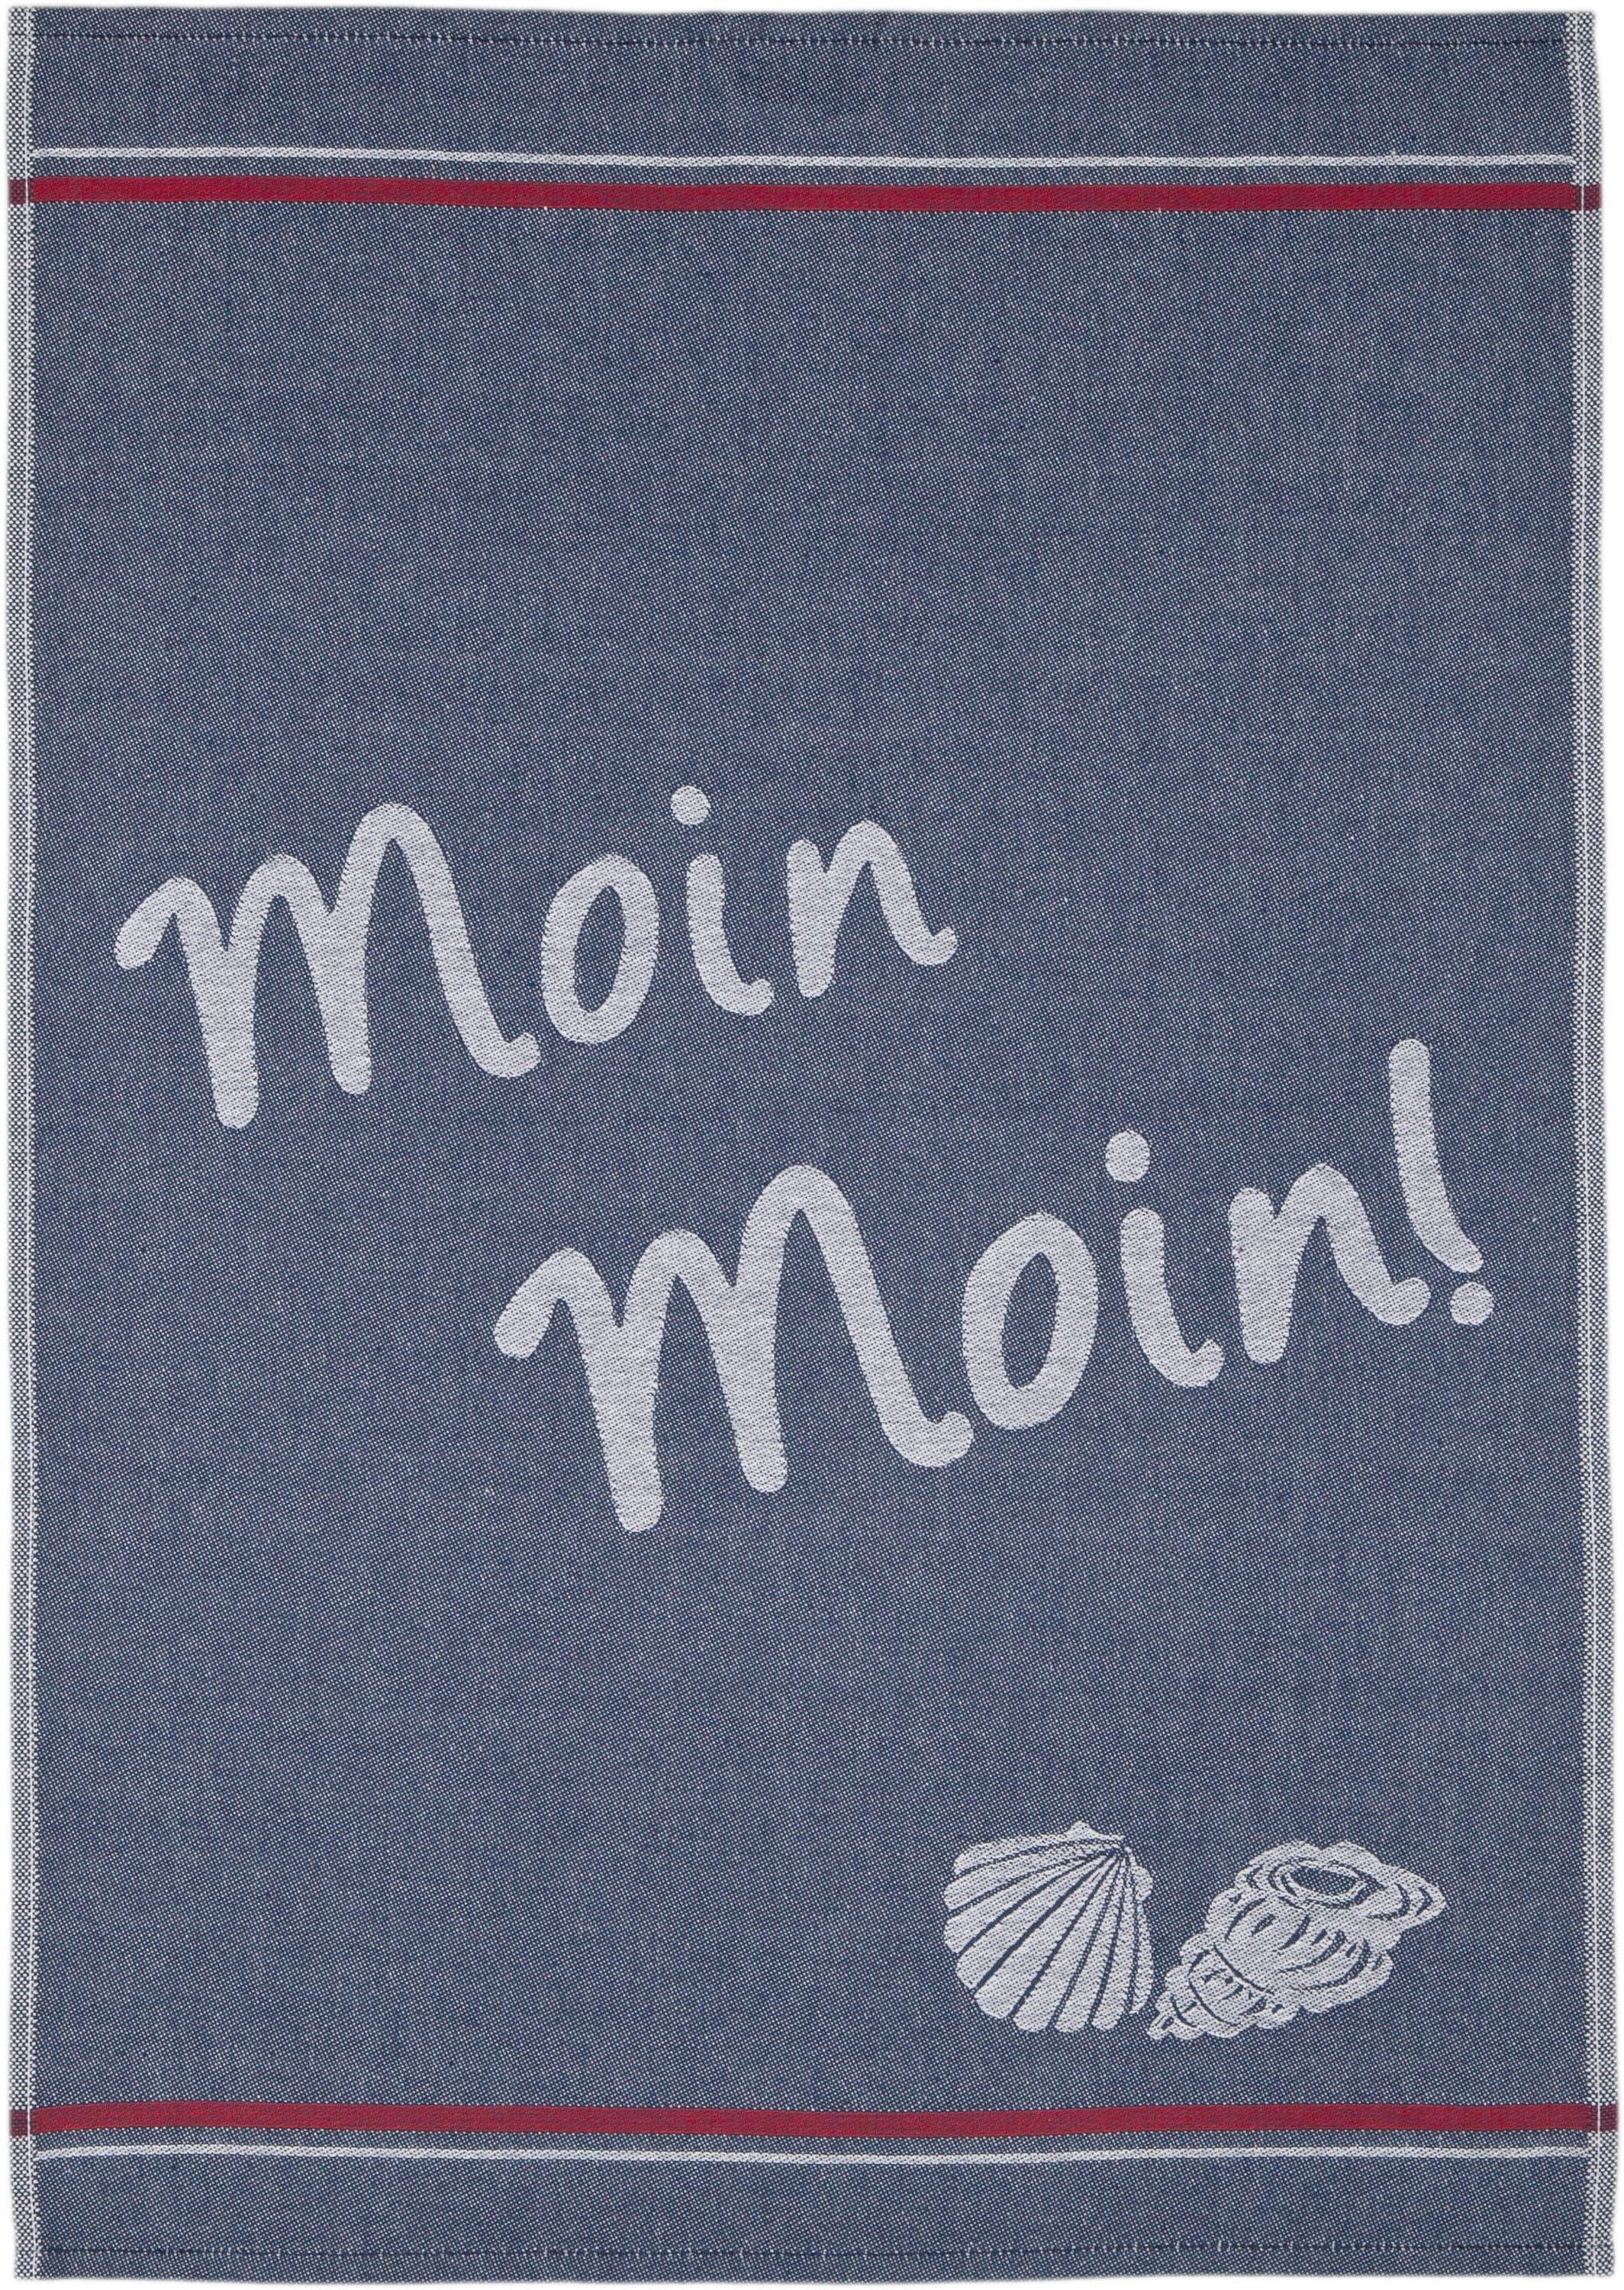 ROSS Geschirrtuch »Maritim - Moin moin«, (Set, 3 tlg.), Motivtuch, aus 100% Baumwolle